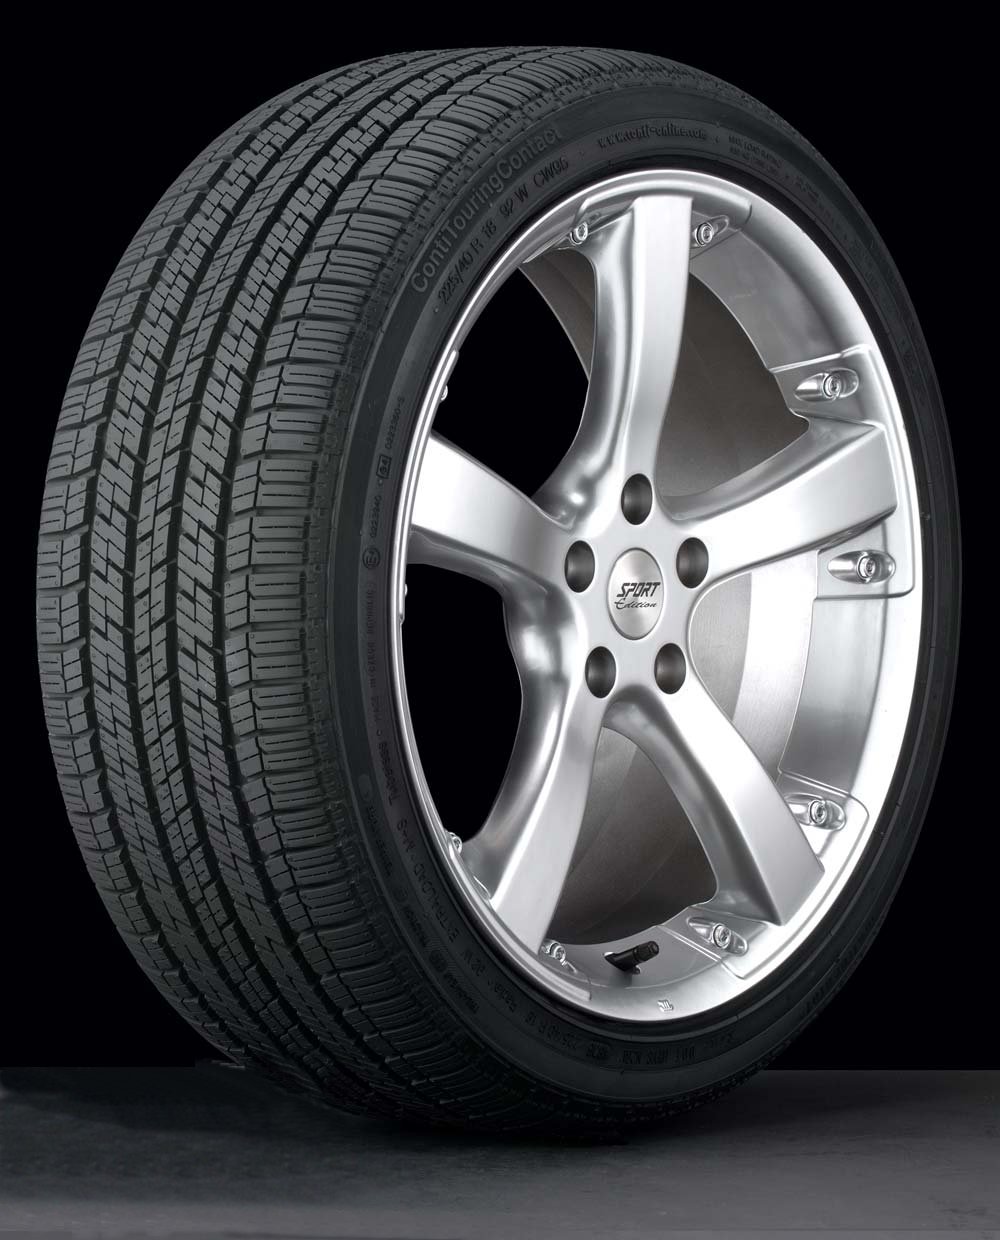 Chrysler crossfire winter tires